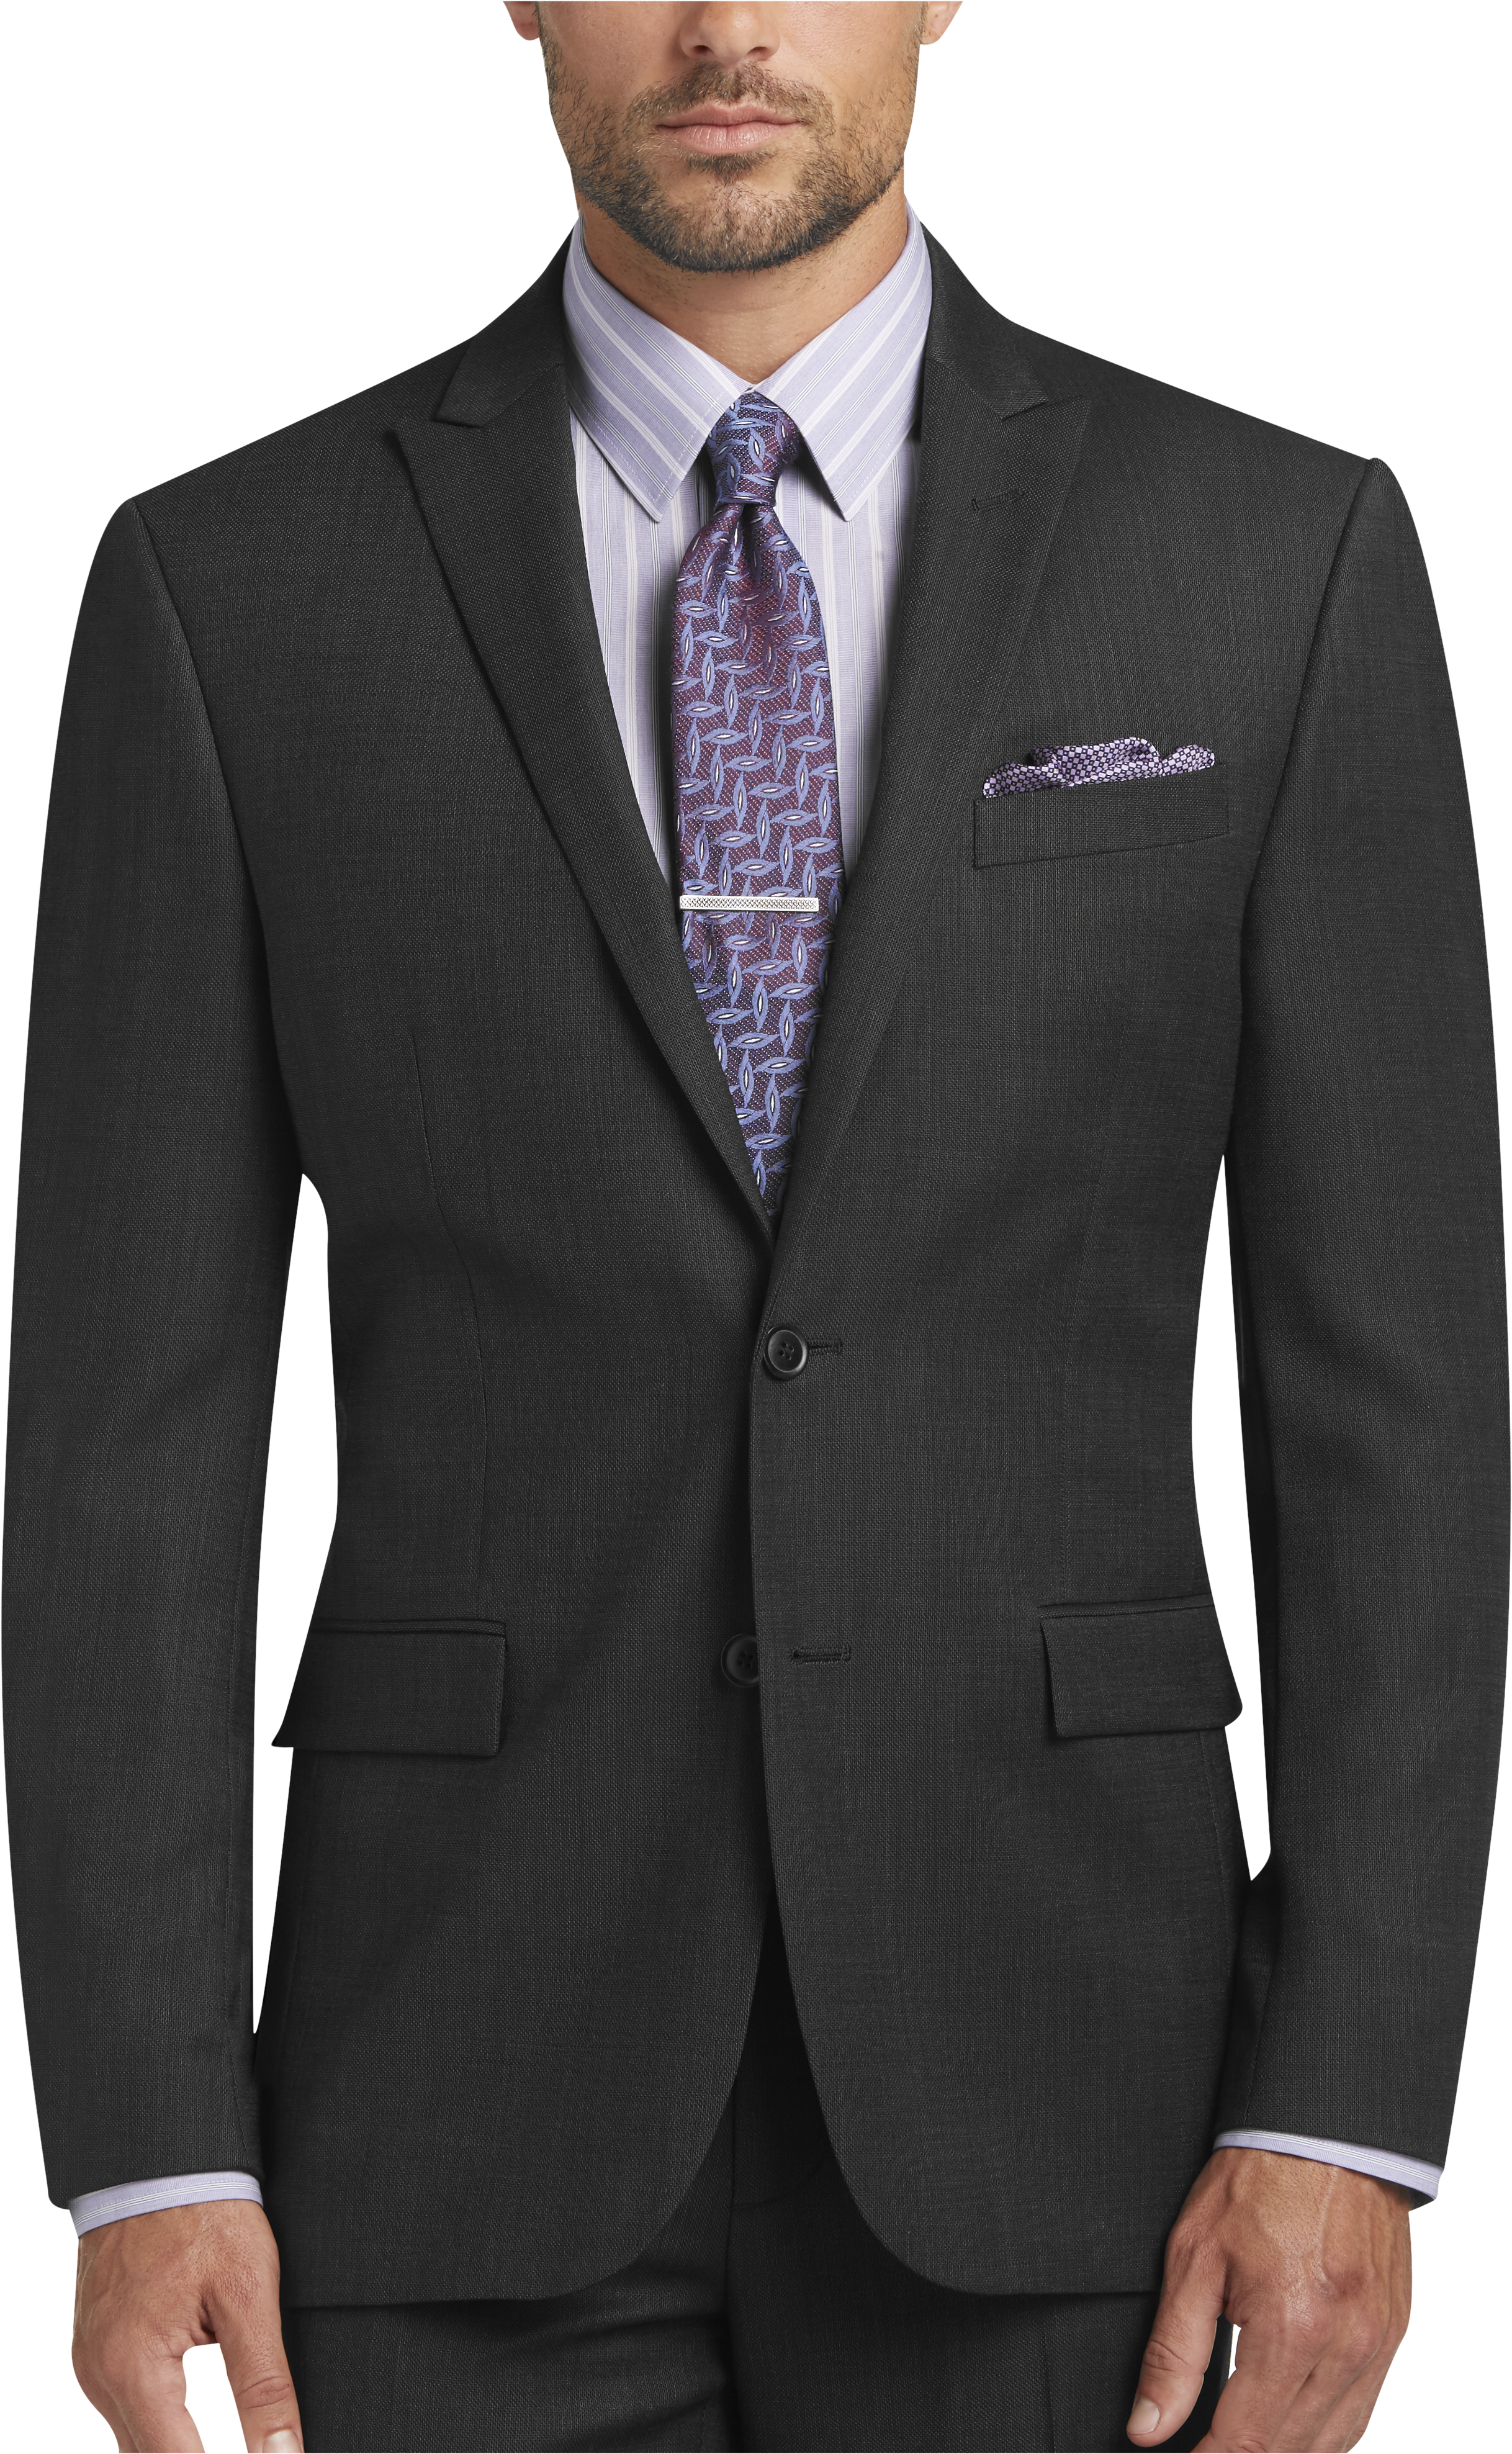 JOE Joseph Abboud Charcoal Tic Slim Fit Suit - Men's Suits | Men's ...